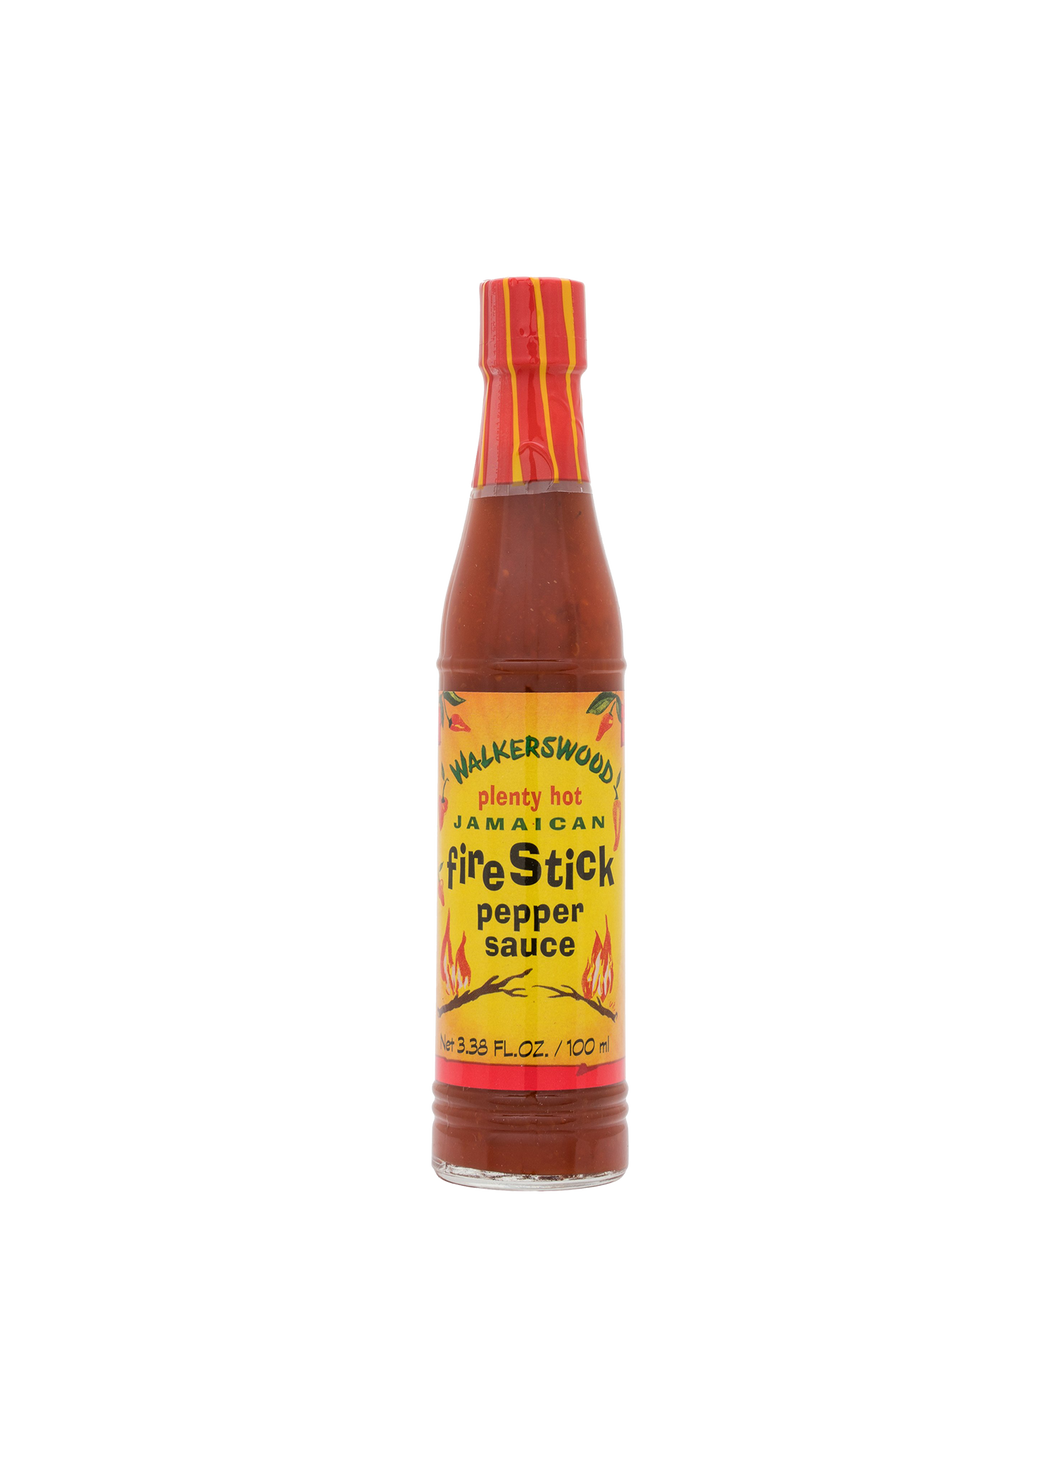 Walkerswood Jamaican Firestick Pepper Sauce Plenty Hot 170ml